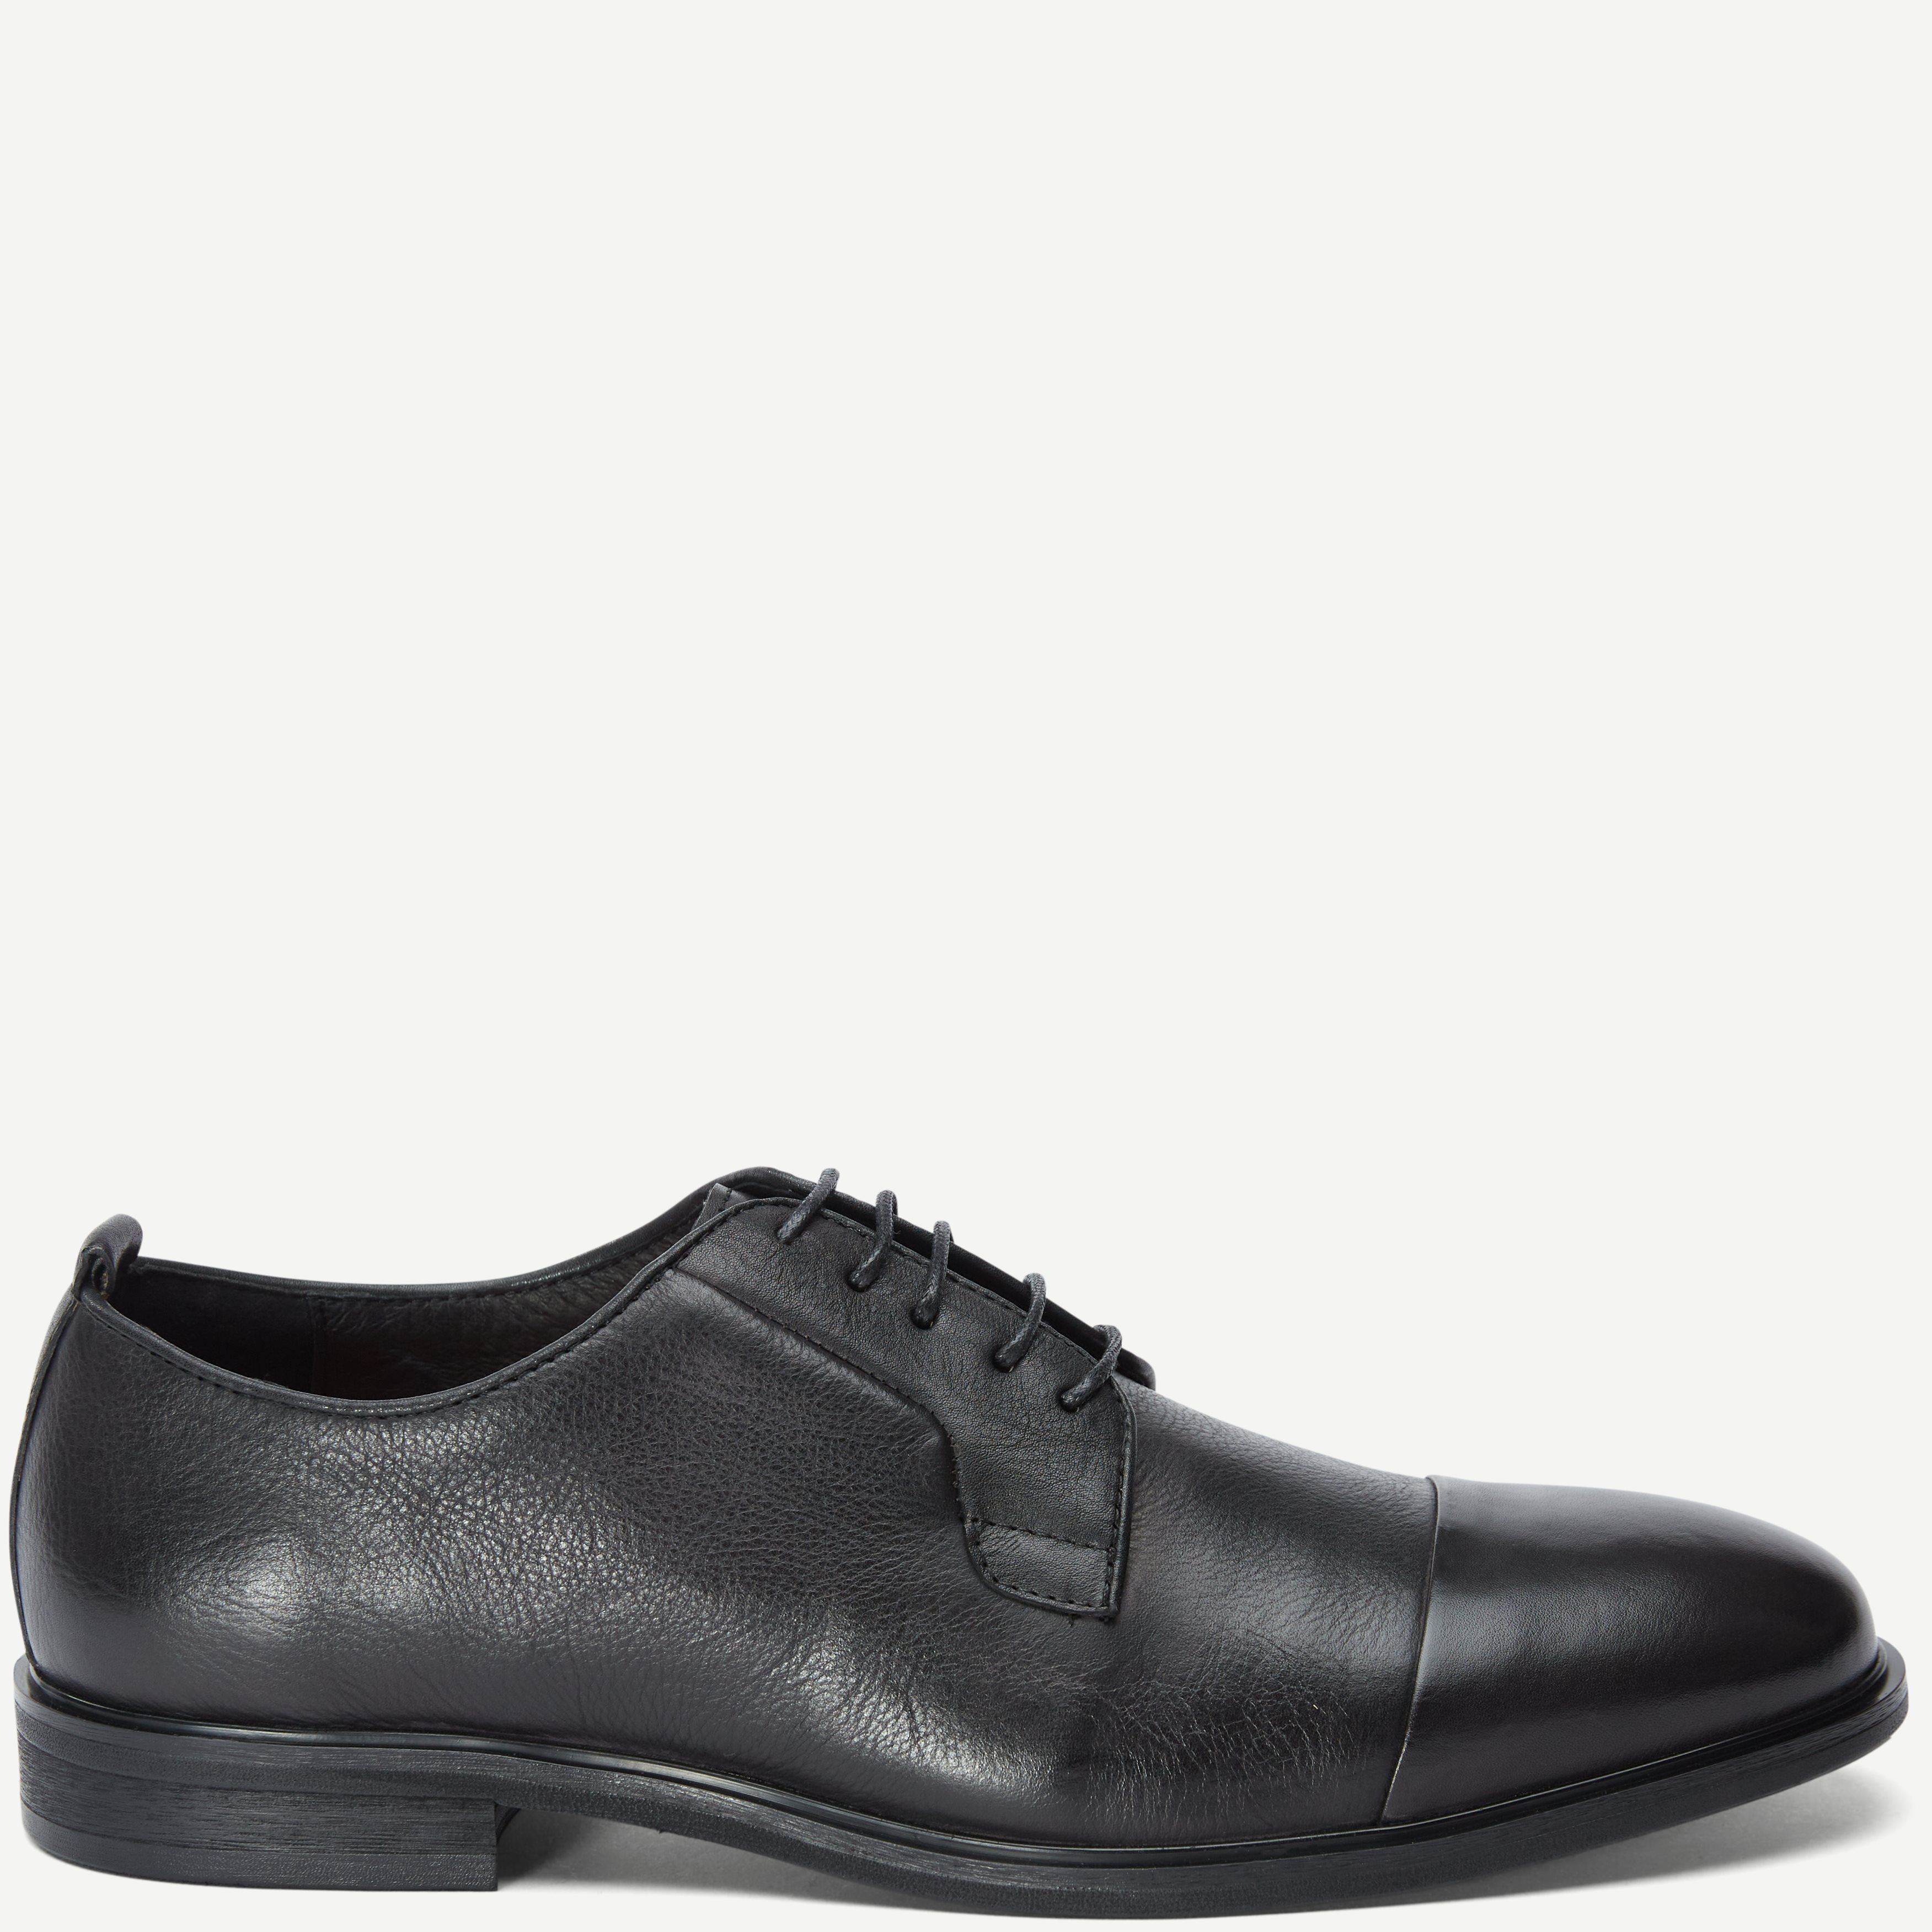 2361 TGA Business Shoes - Shoes - Black